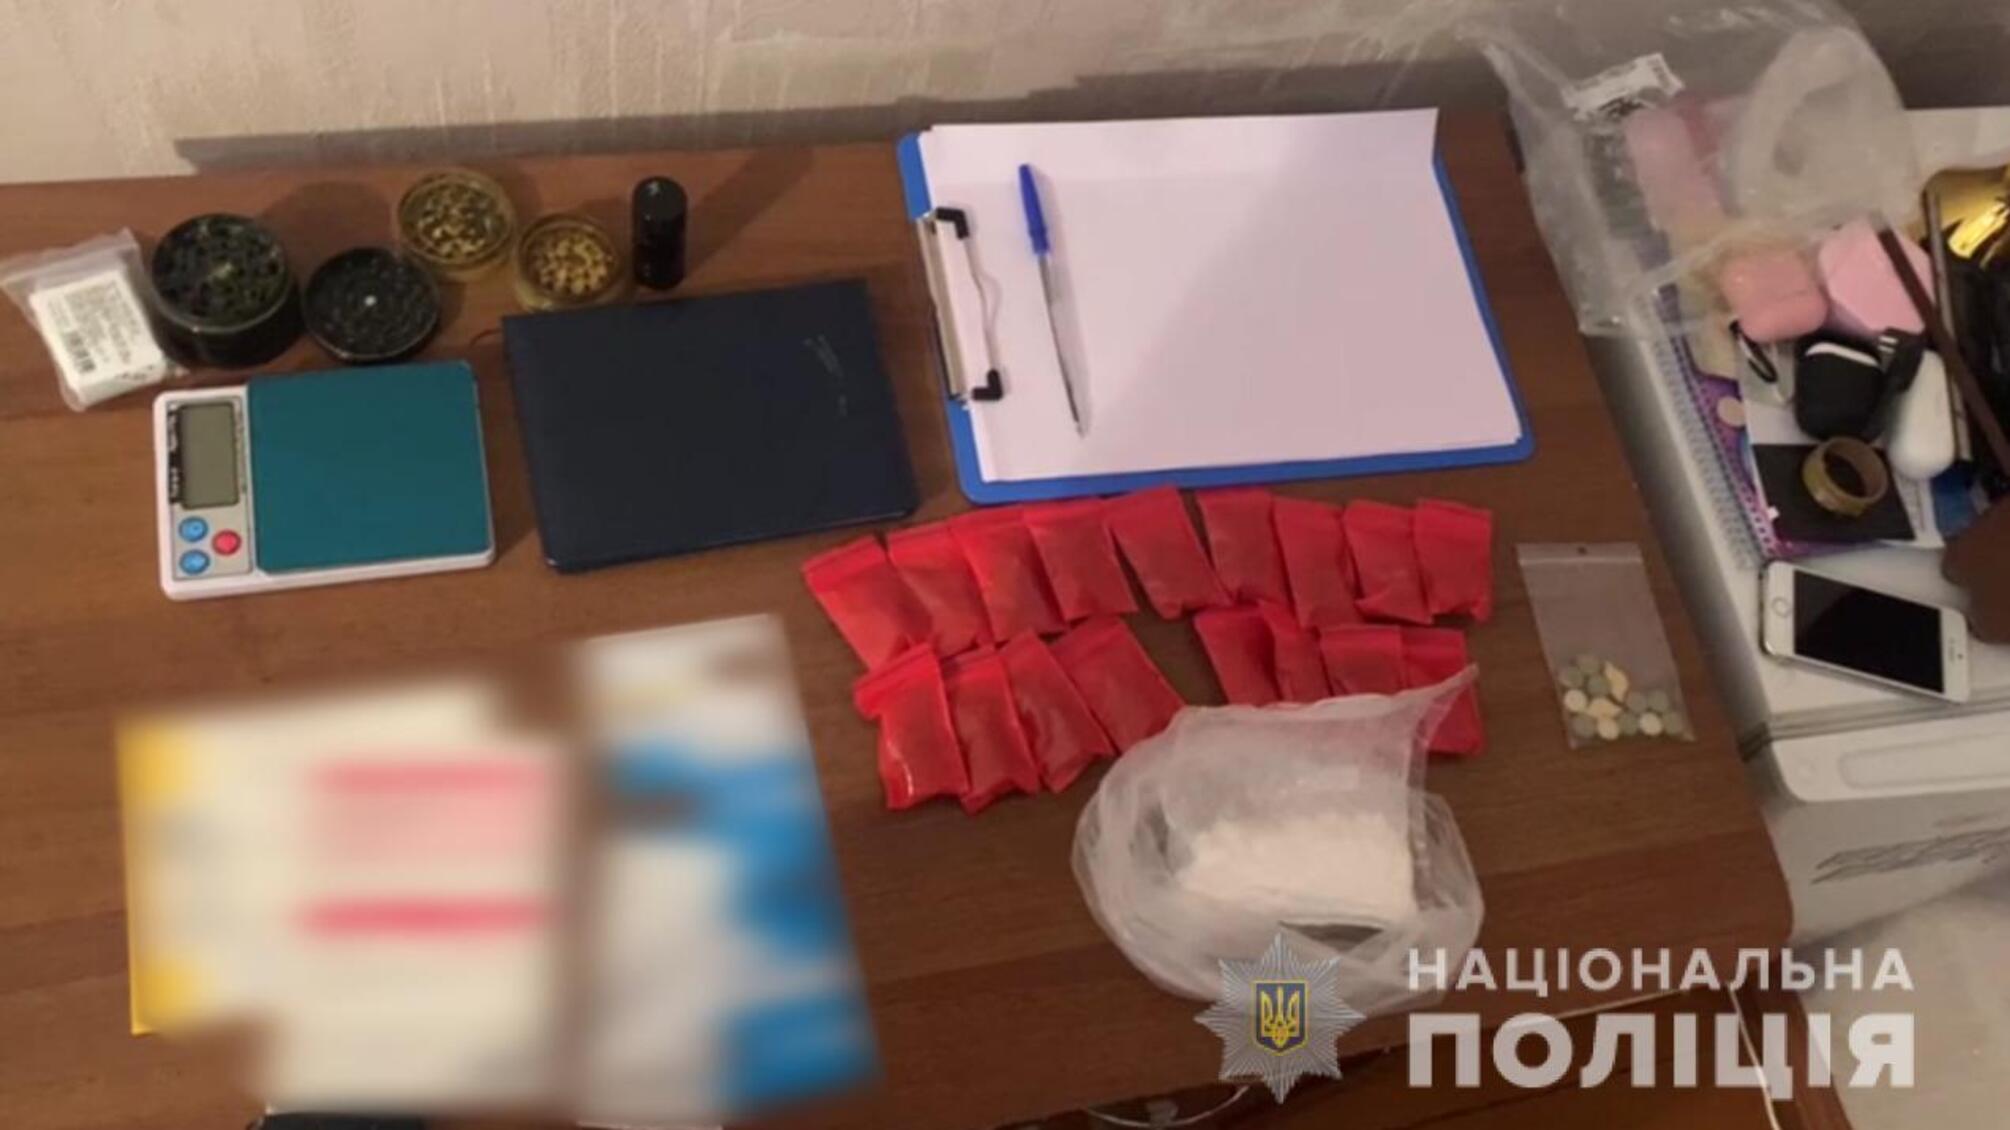 Поліцейські вилучили у жителя Одещини наркотичних засобів майже на 200 тисяч гривень